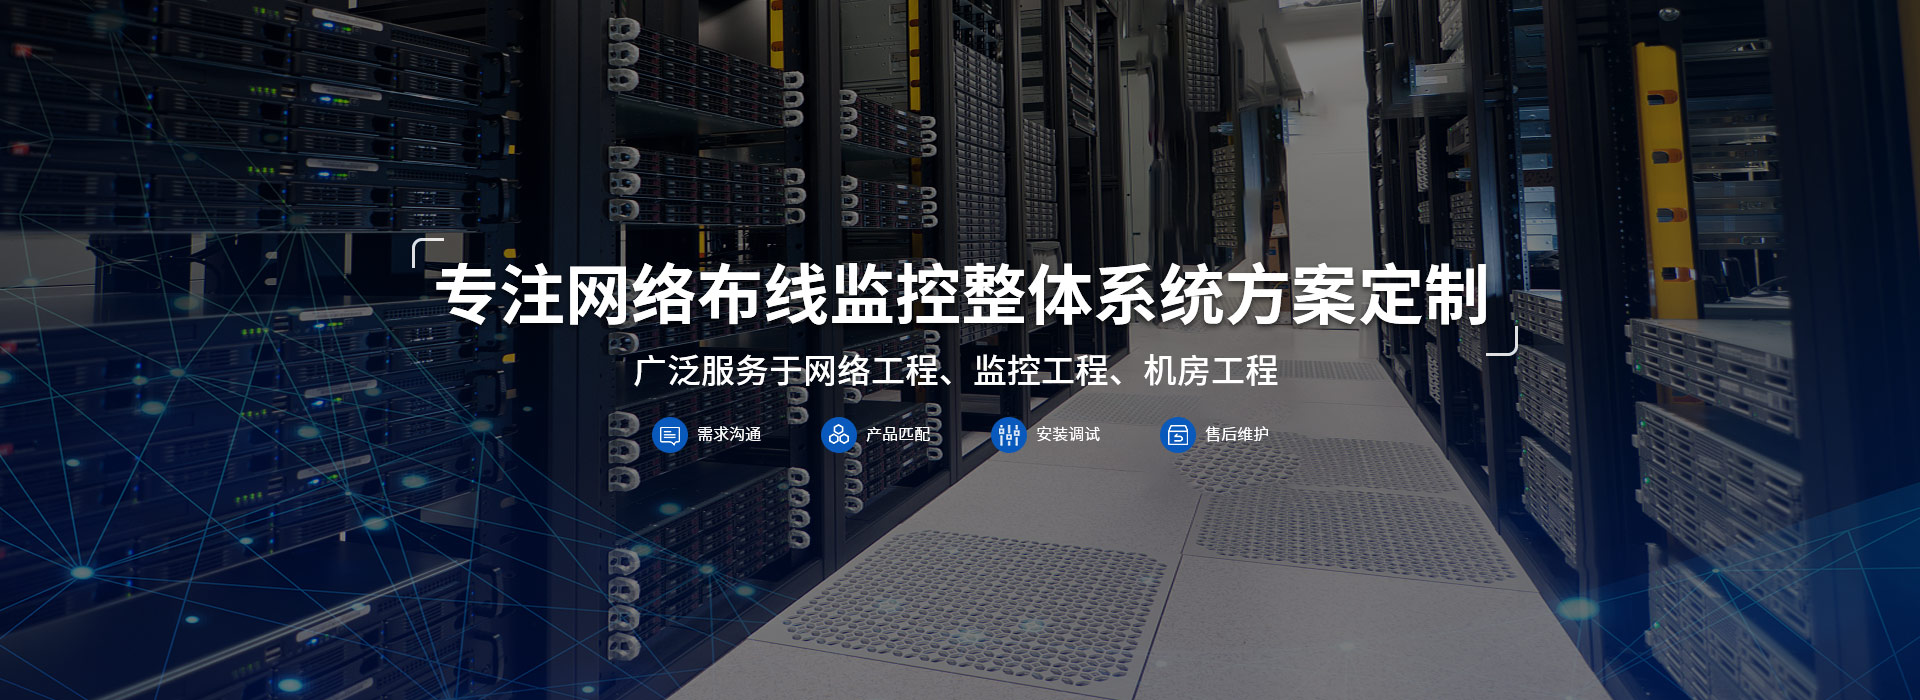 凌波皓宇专注网络布线监控整体系统方案定制